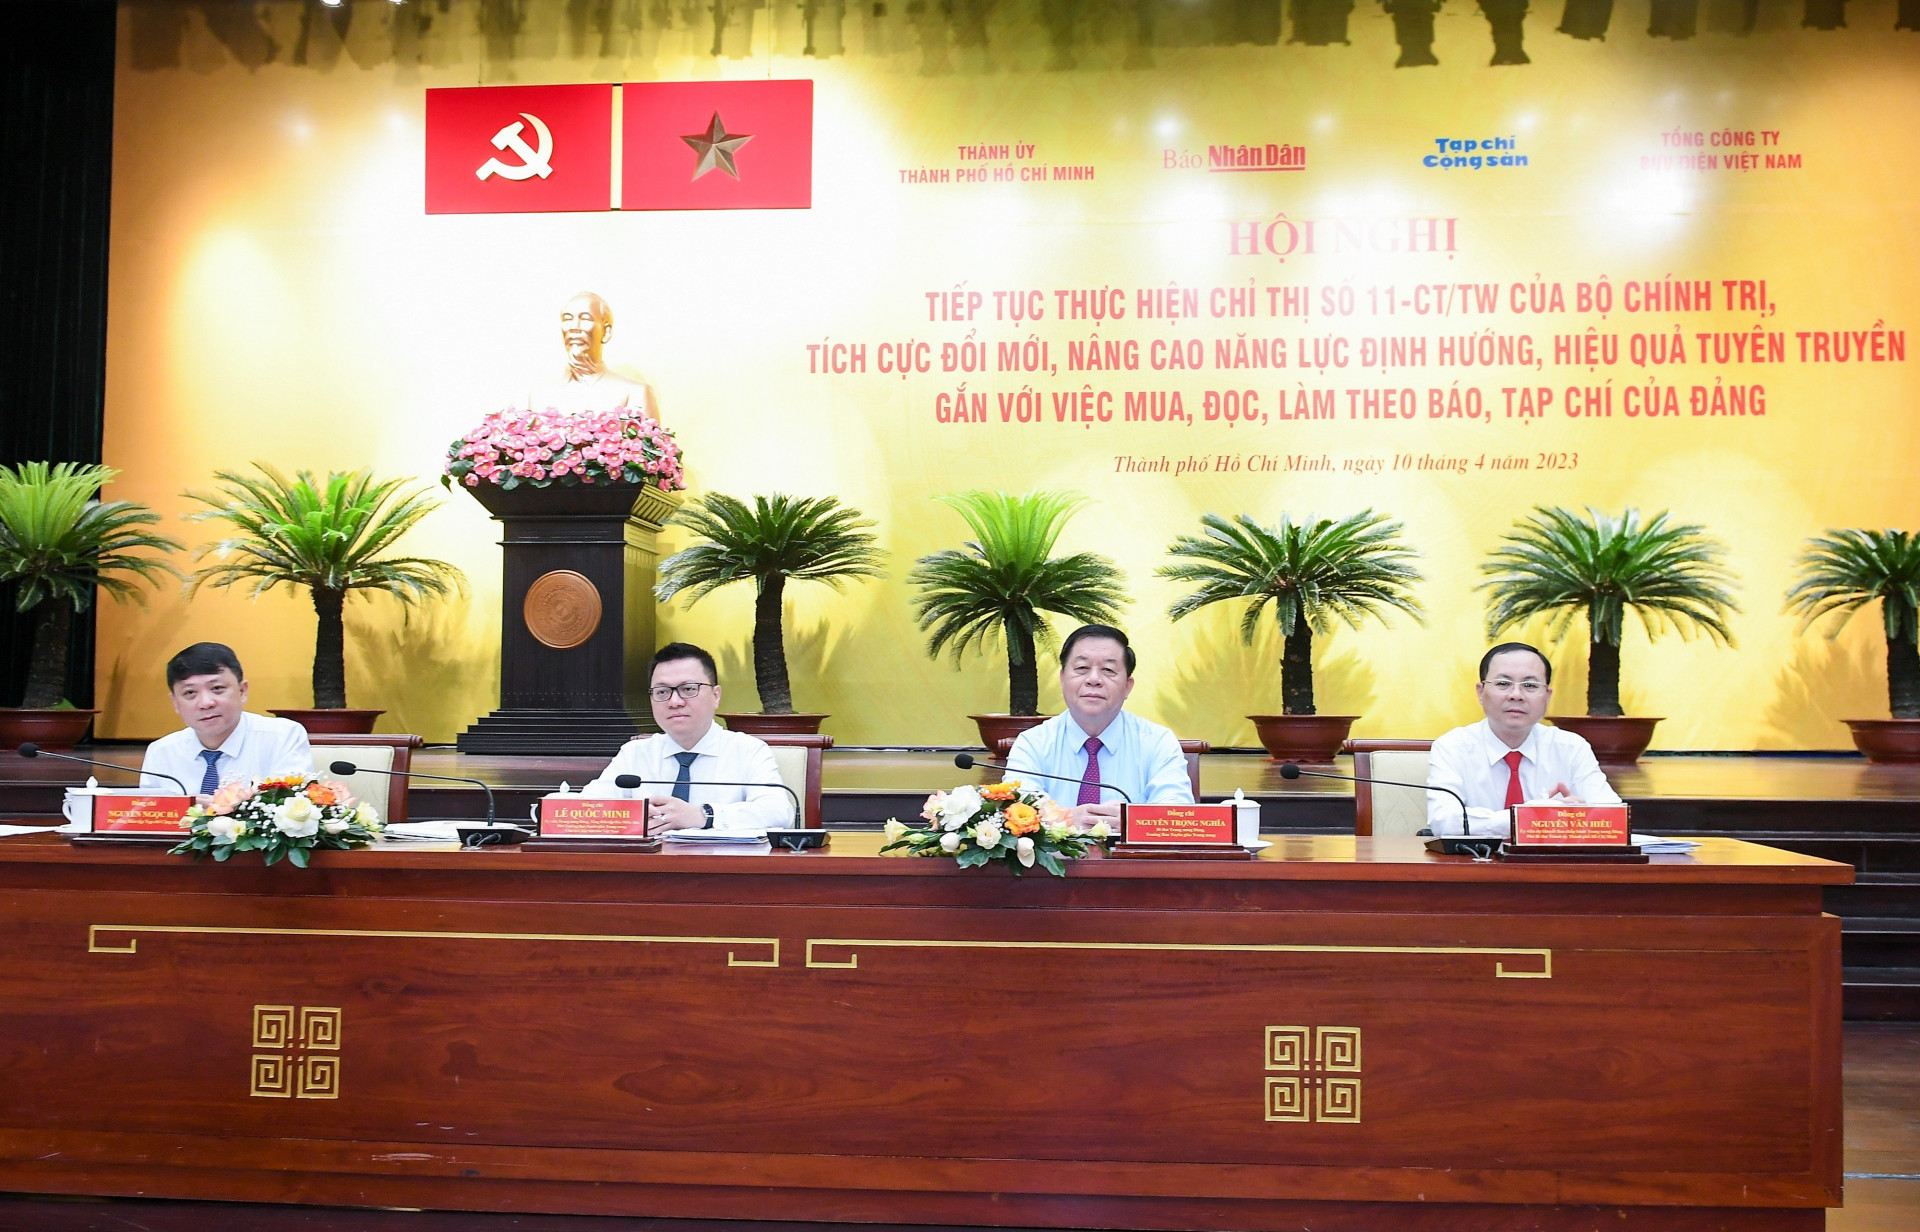 Đồng chí Nguyễn Trọng Nghĩa (thứ hai, từ phải sang), Bí thư Trung ương Đảng, Trưởng ban Ban Tuyên giáo Trung ương cùng lãnh đạo Báo Nhân dân, Tạp chí Cộng sản, Thành ủy Thành phố Hồ Chí Minh chủ trì hội nghị.